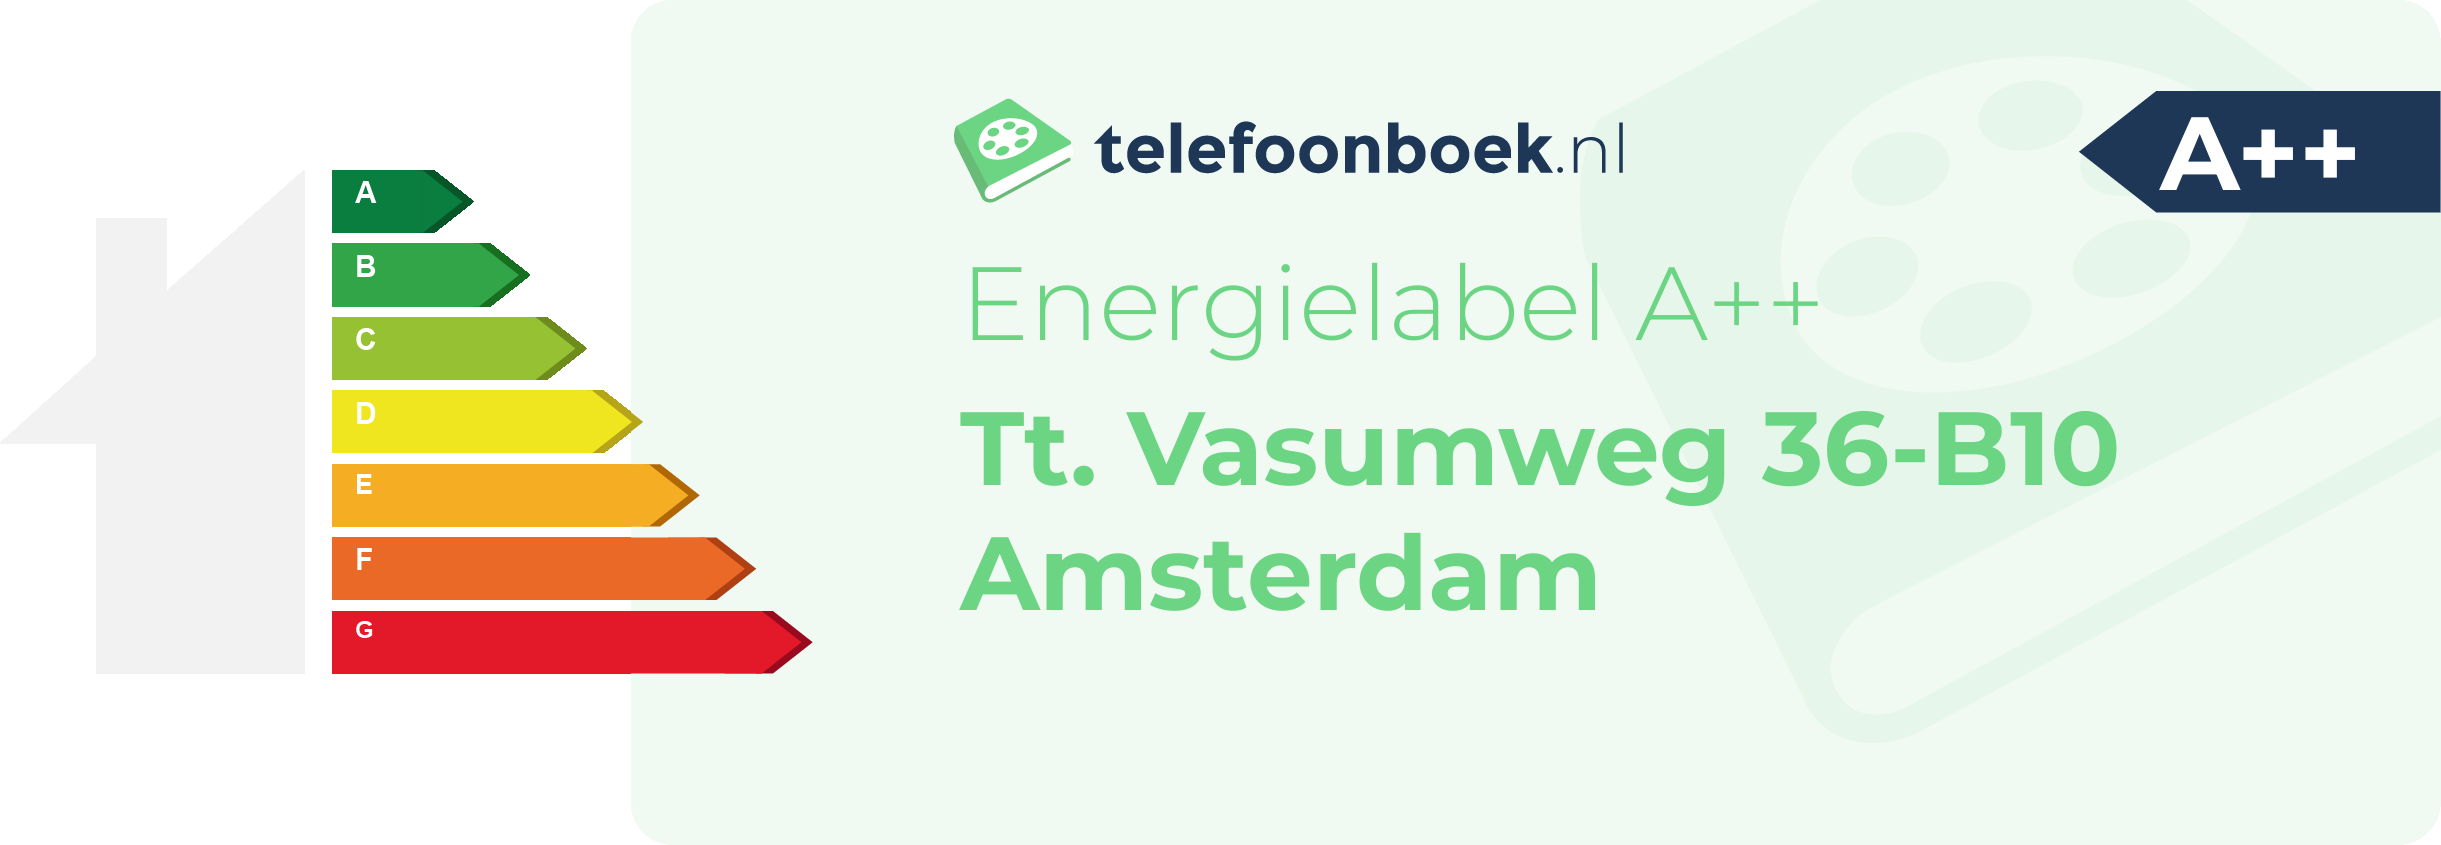 Energielabel Tt. Vasumweg 36-B10 Amsterdam